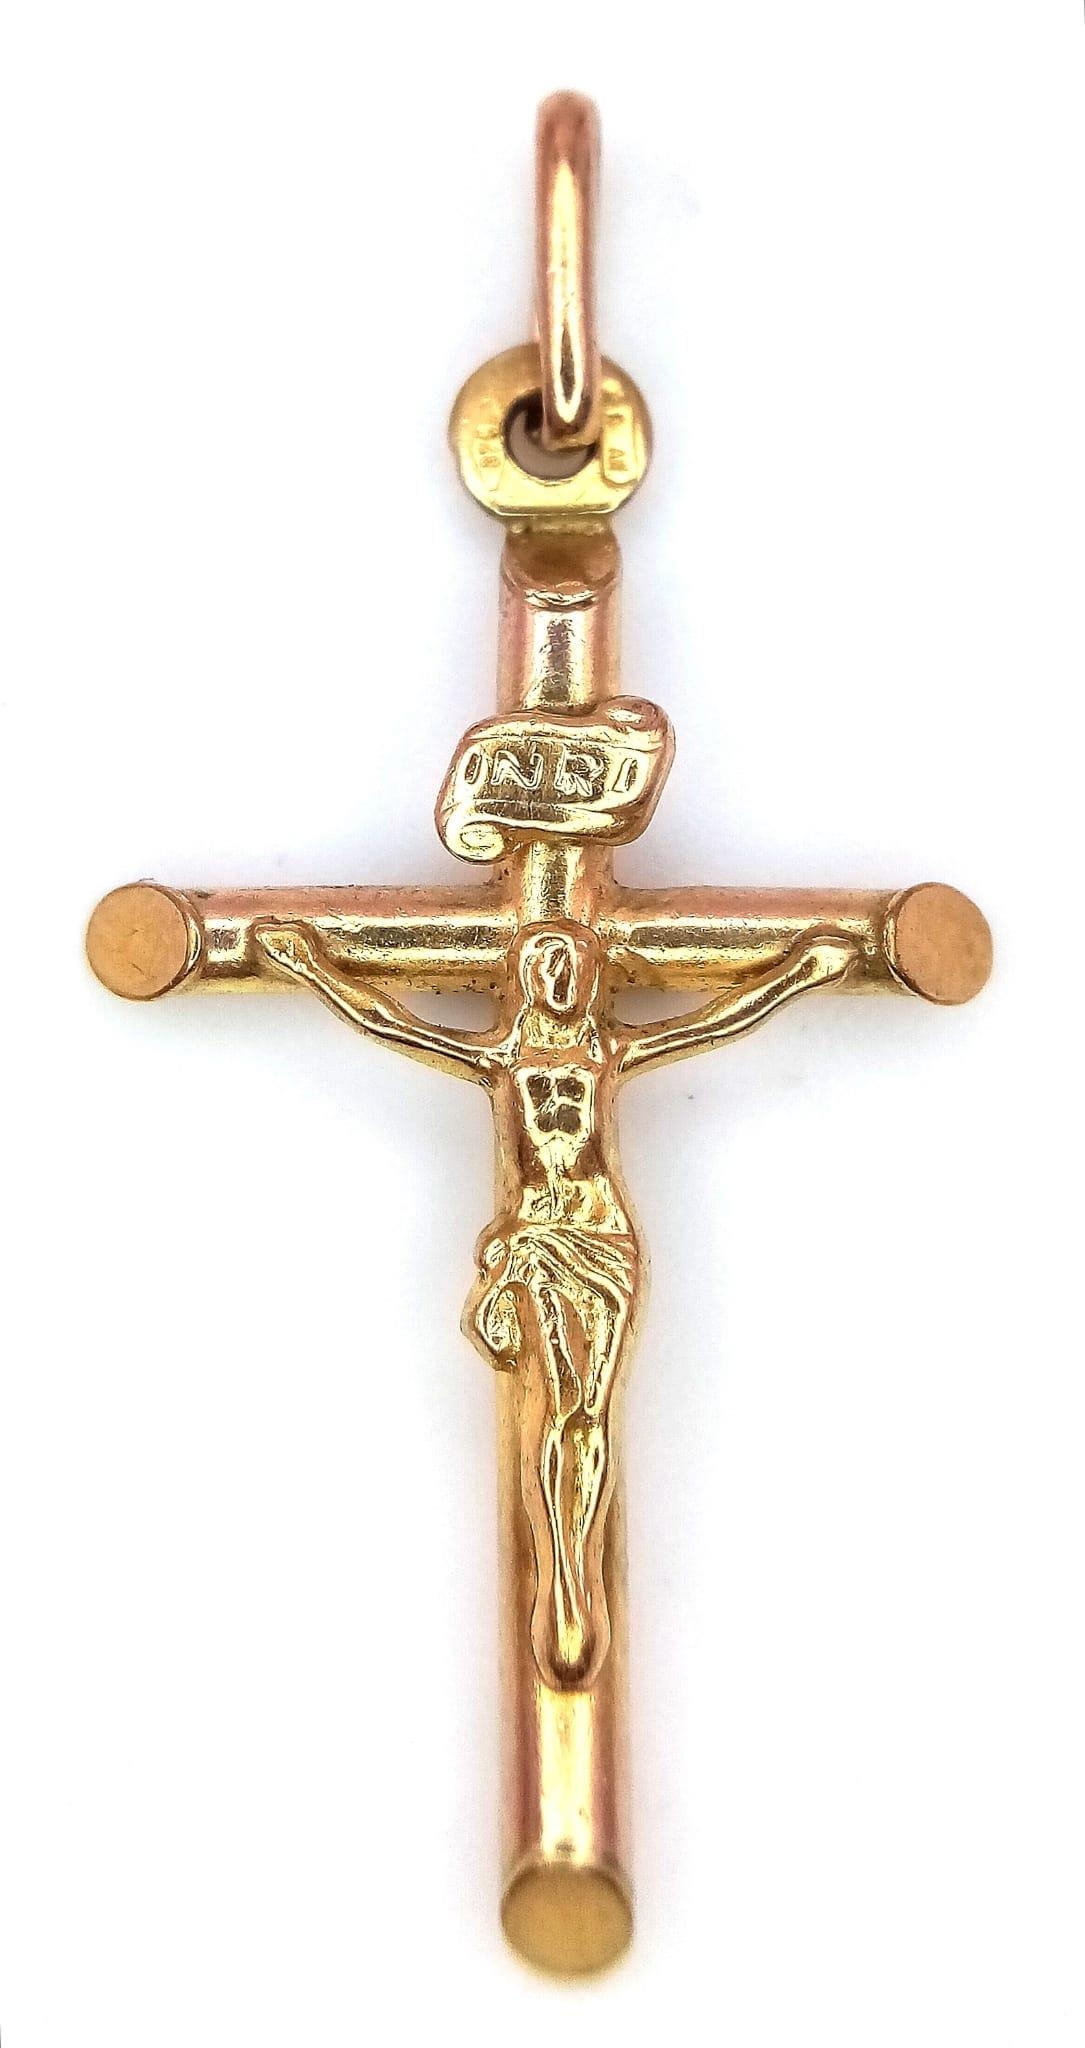 9k yellow gold crucifix pendant 1g